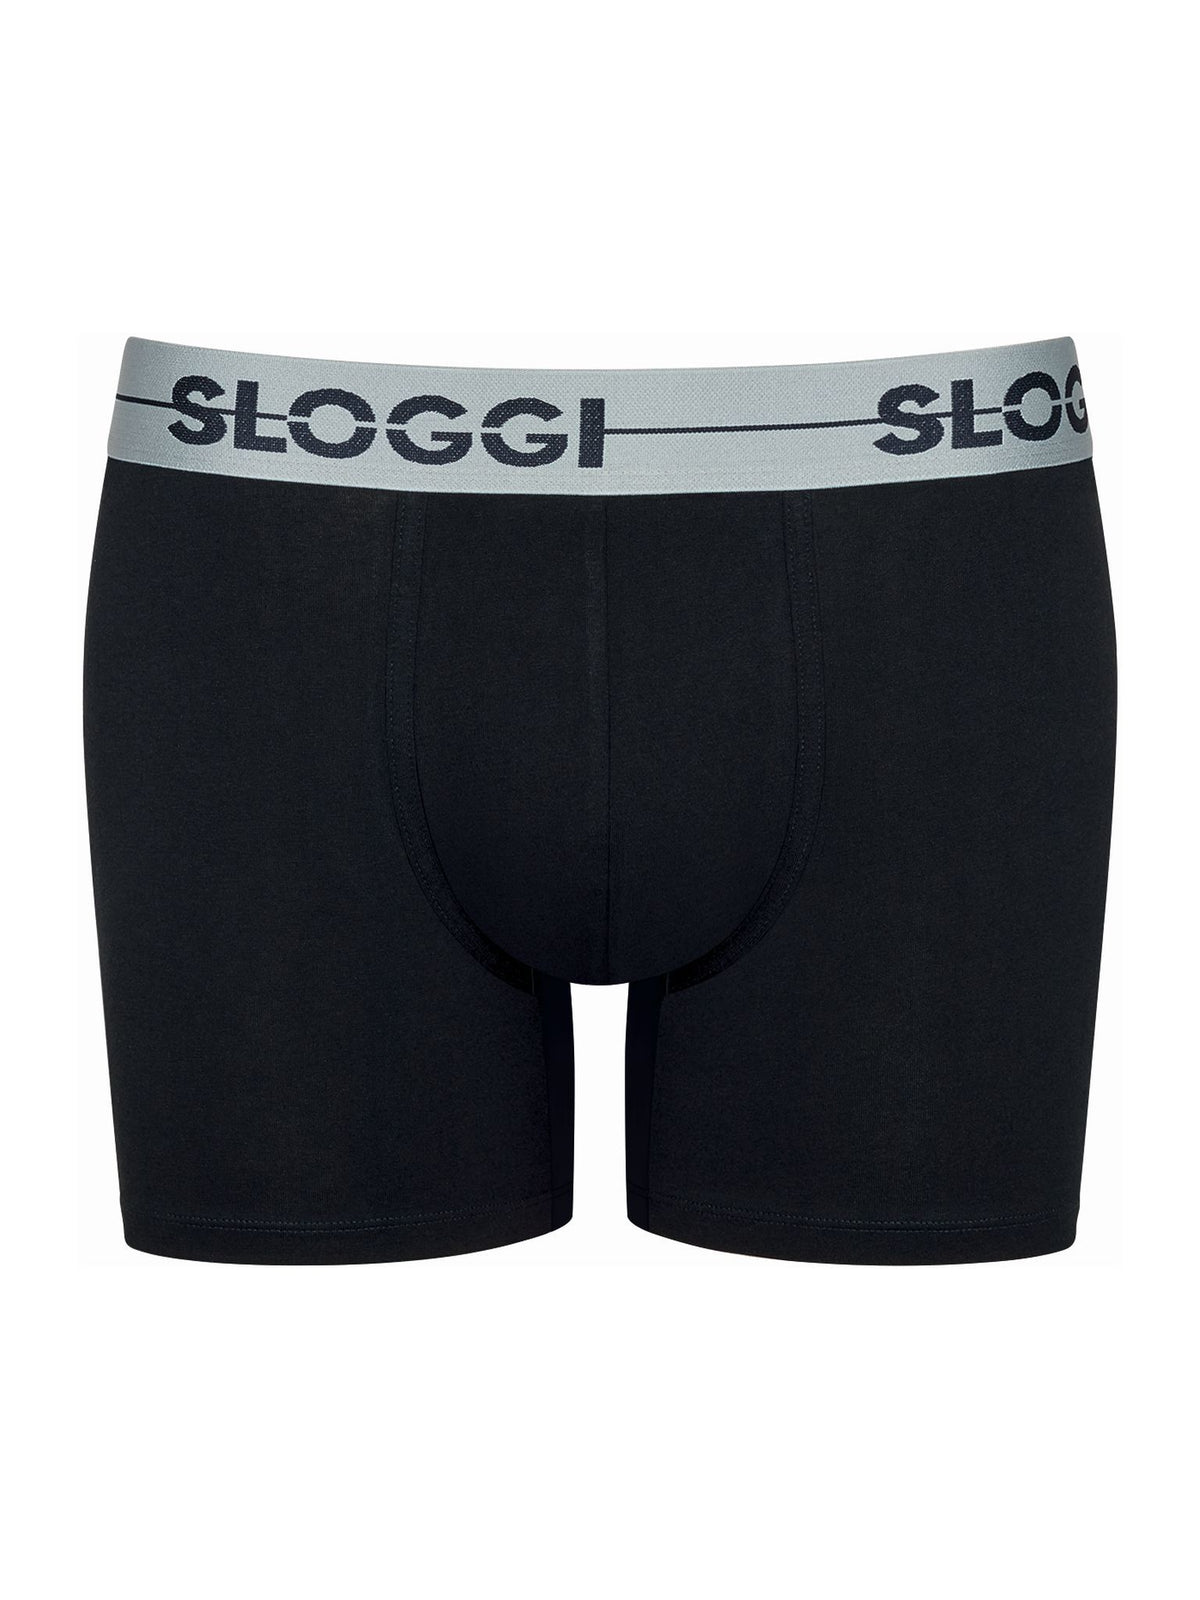 Sloggi Men&#39;s Go Shorts Boxer Briefs Pants 3 Pack 10198022